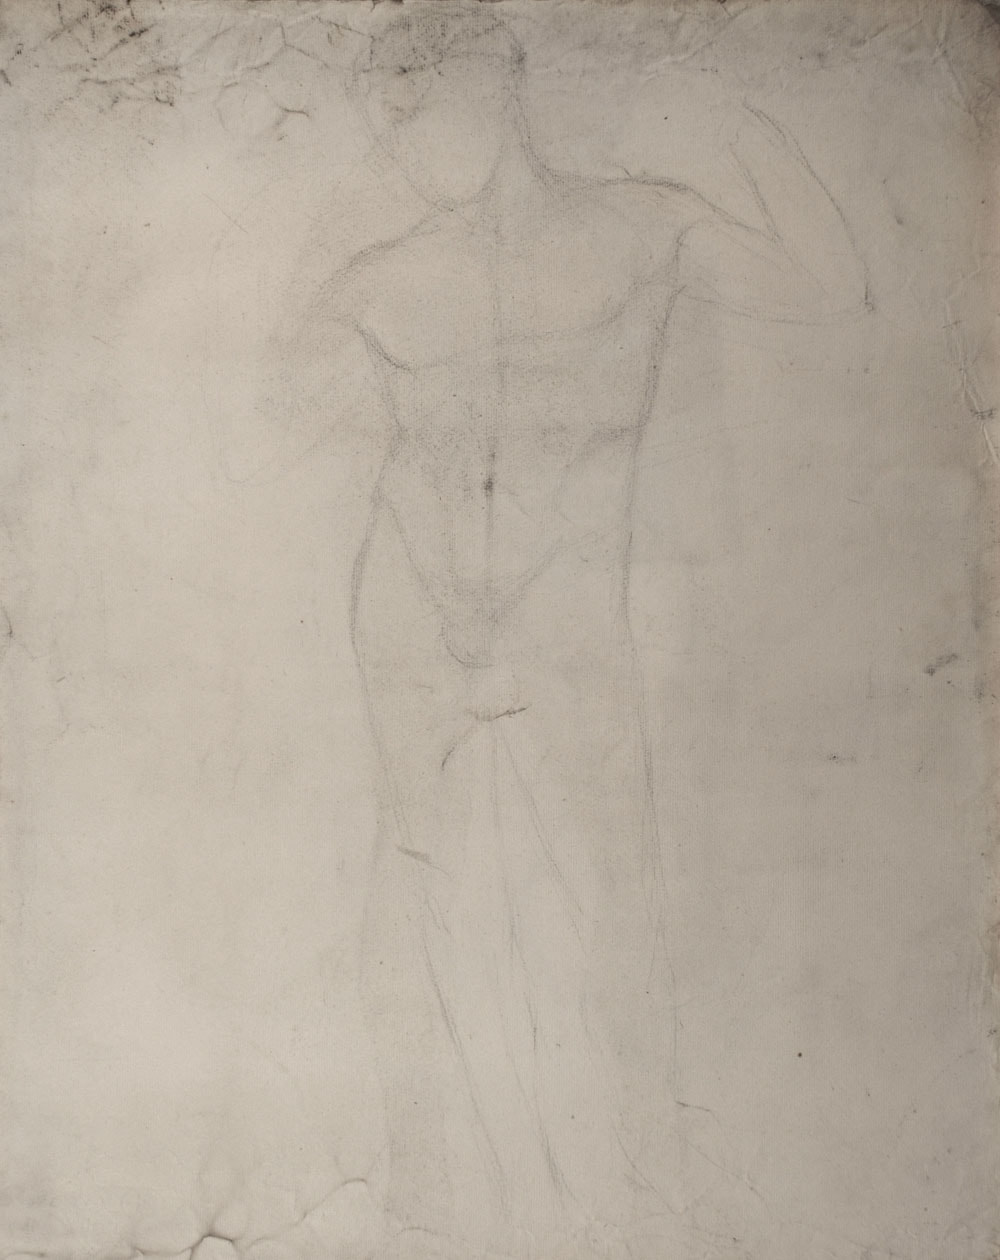 Lucien-Paul Pouzargues drawing figure study